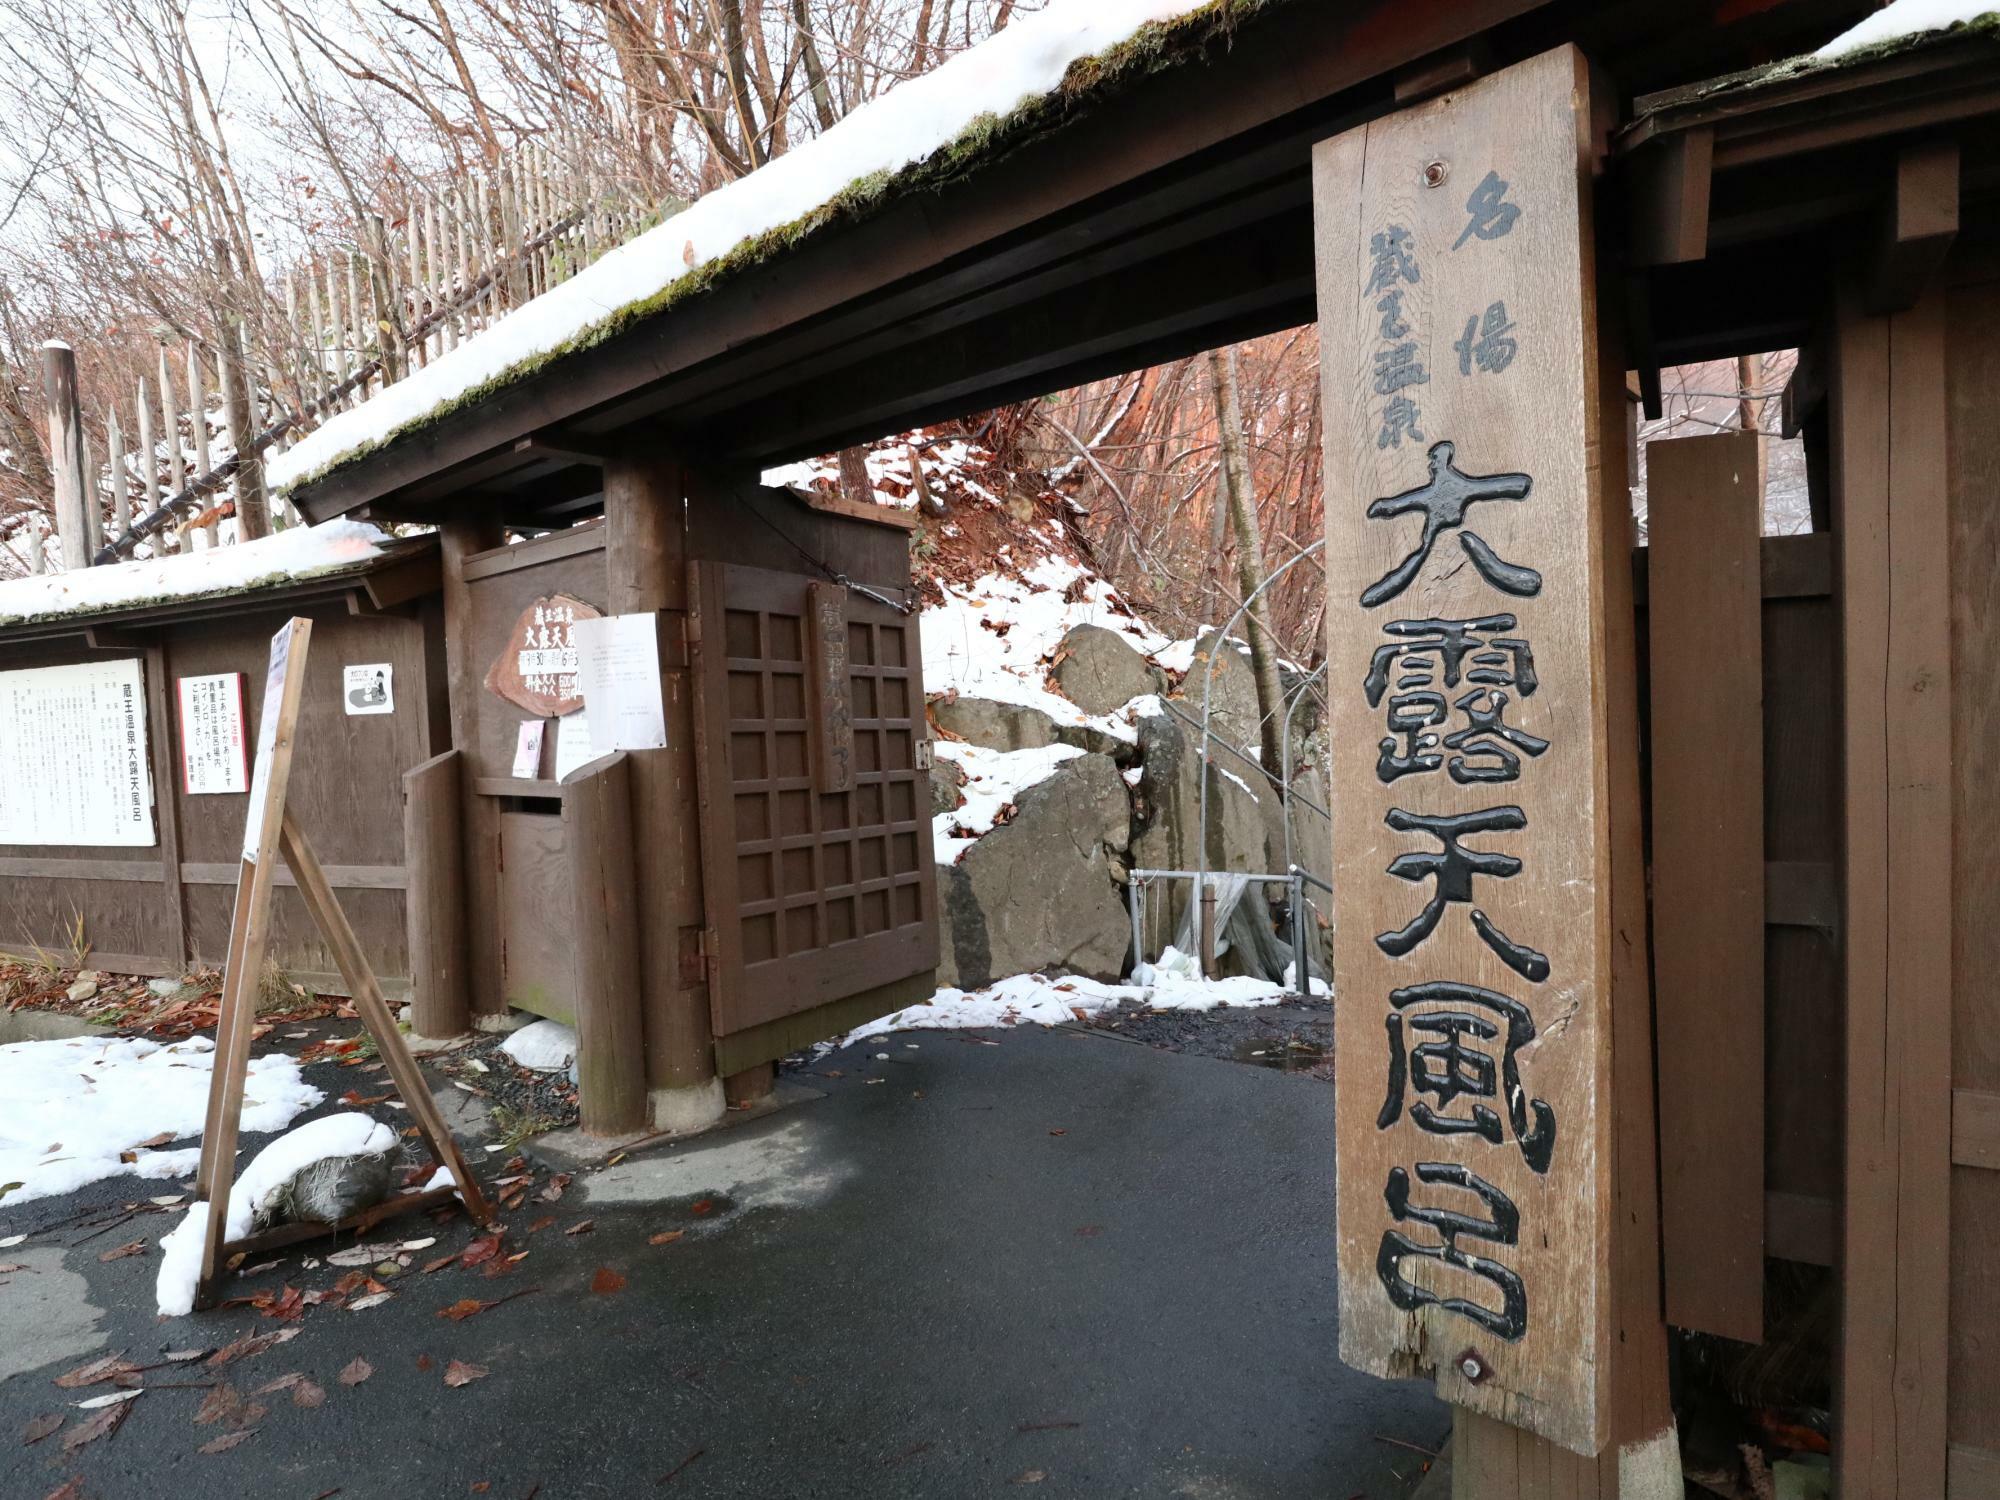 蔵王温泉大露天風呂は冬季休業です。これは休業前の晩秋にたまたま雪が降った時に撮影したイメージ写真です。